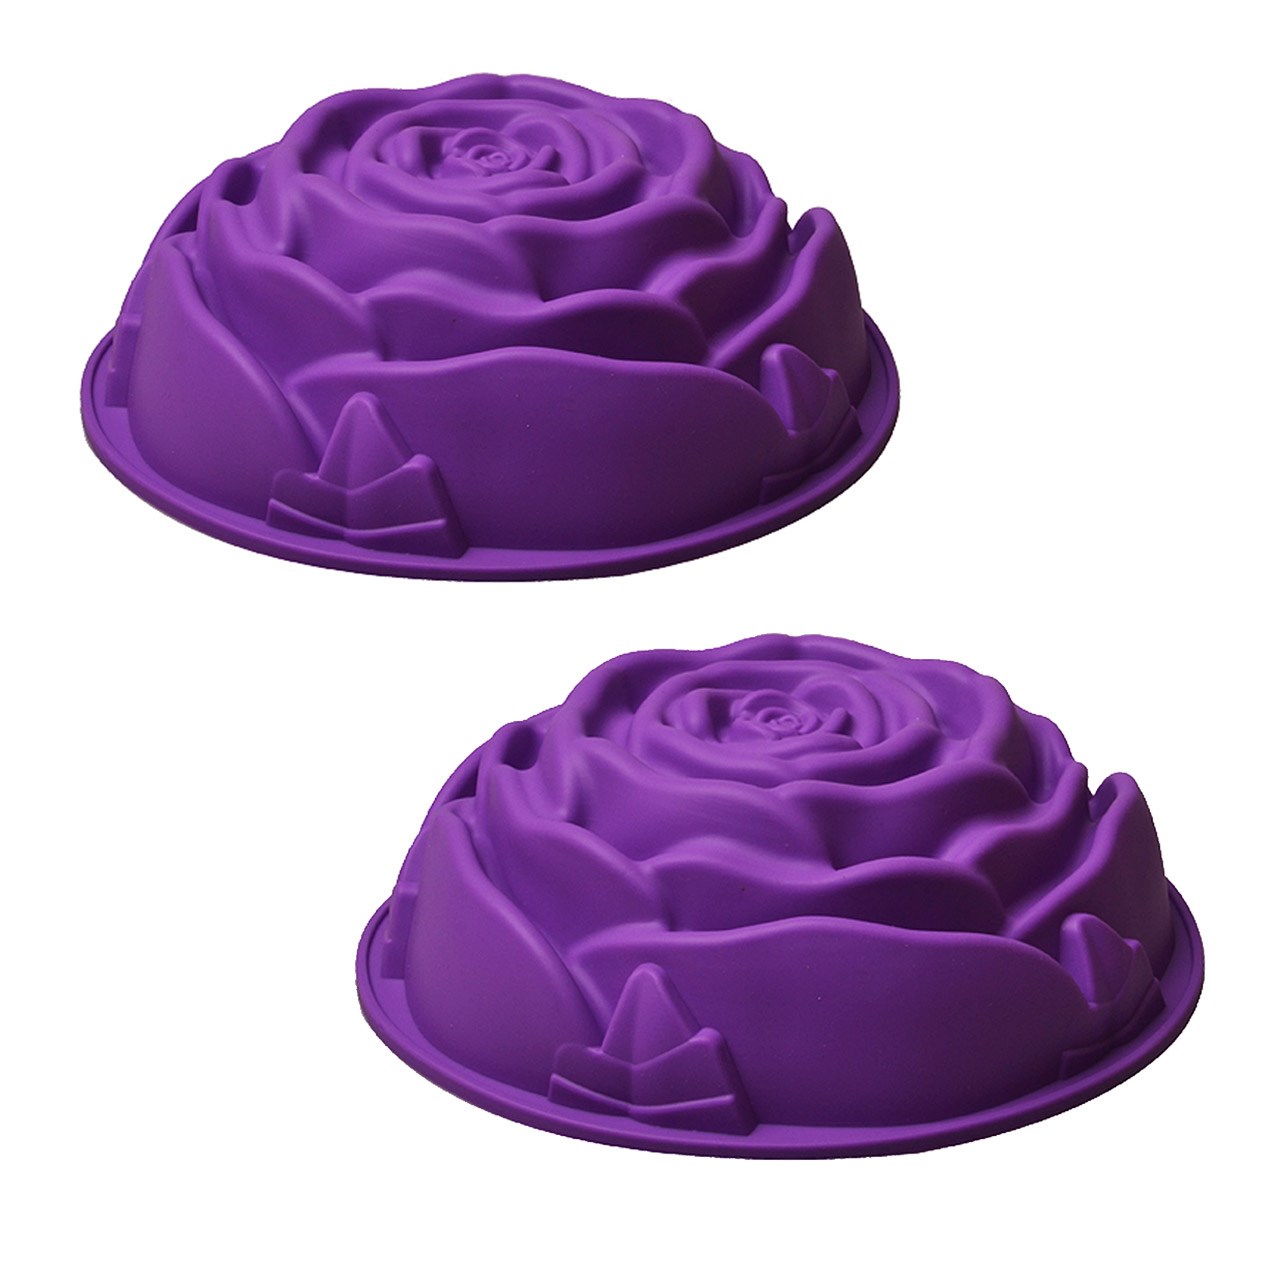 قالب شیرینی رجینال مدل Flower-6 سایز 24 - بسته 2 عددی